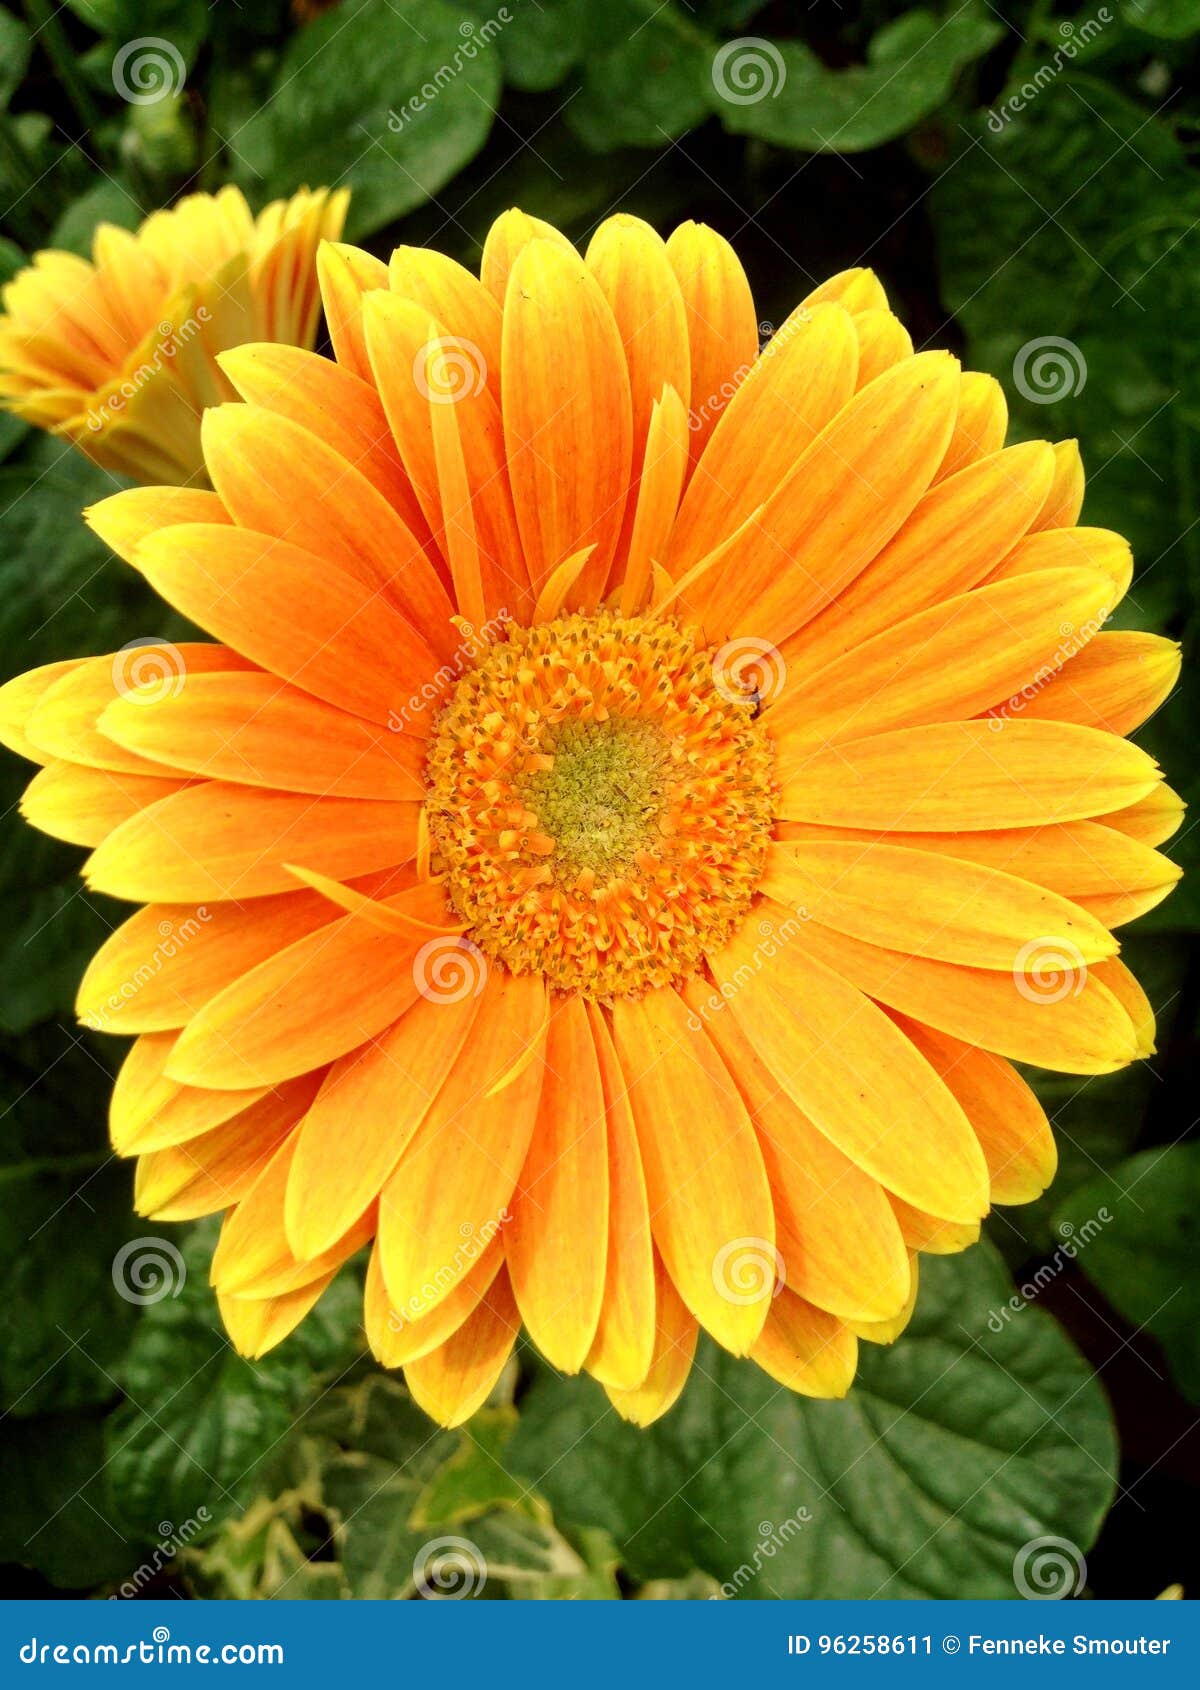 Bright Yellow Gerbera Germini Flower Stock Image - Image of gerbera,  display: 96258611